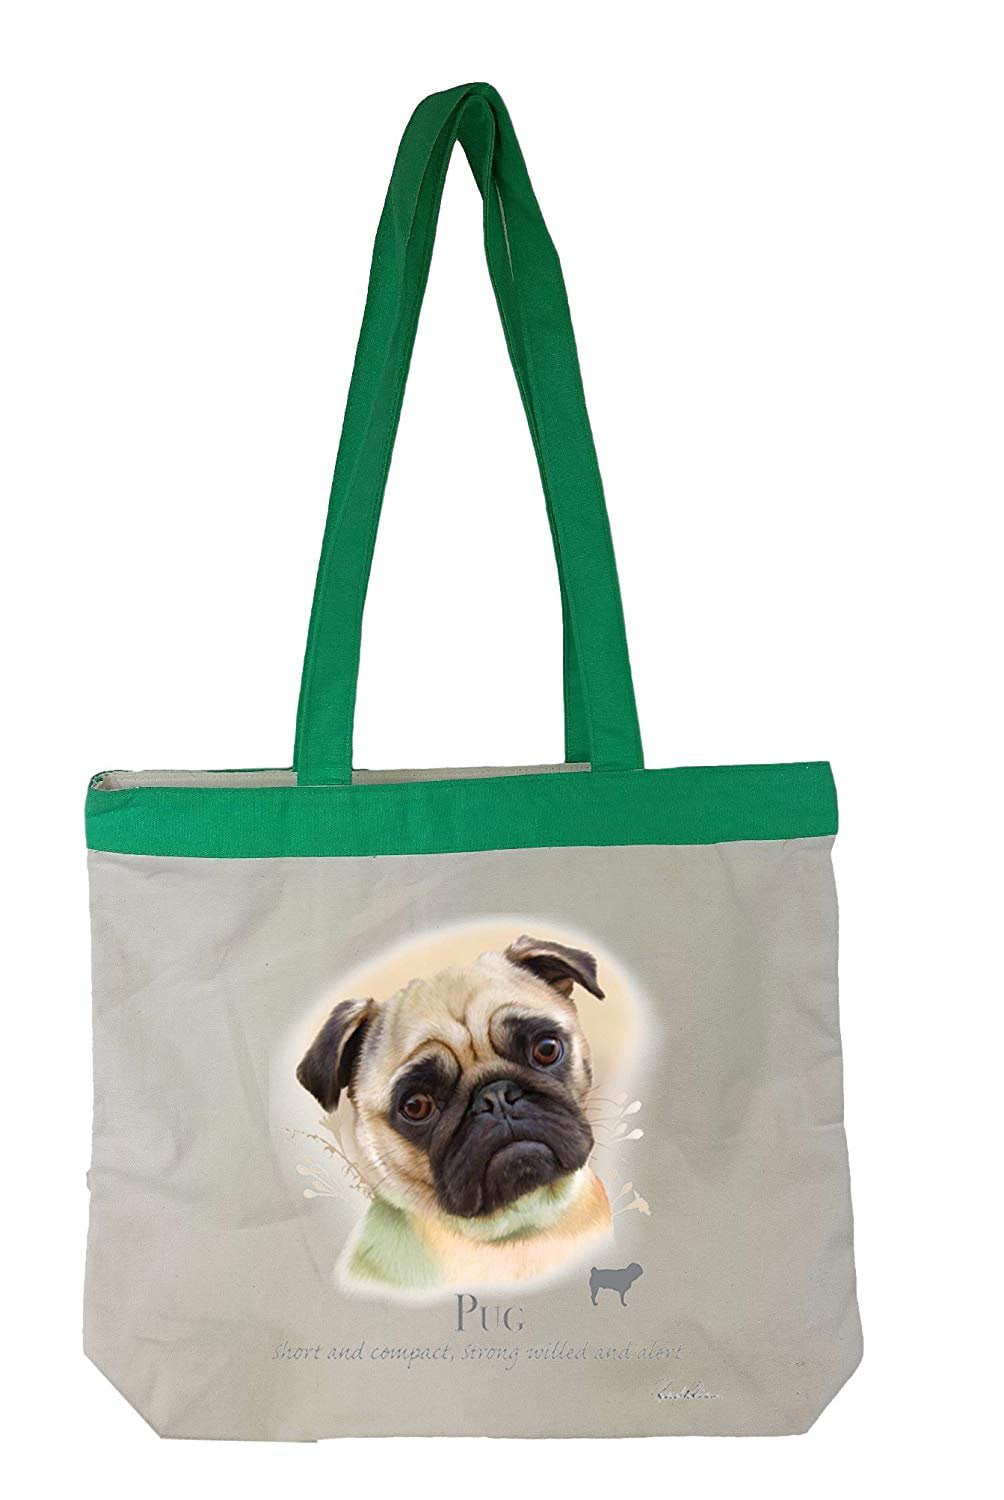 Mummy Nappy Bags Large Capacity Handbag Gym Sport Messenger Bag Pug Animal Print 